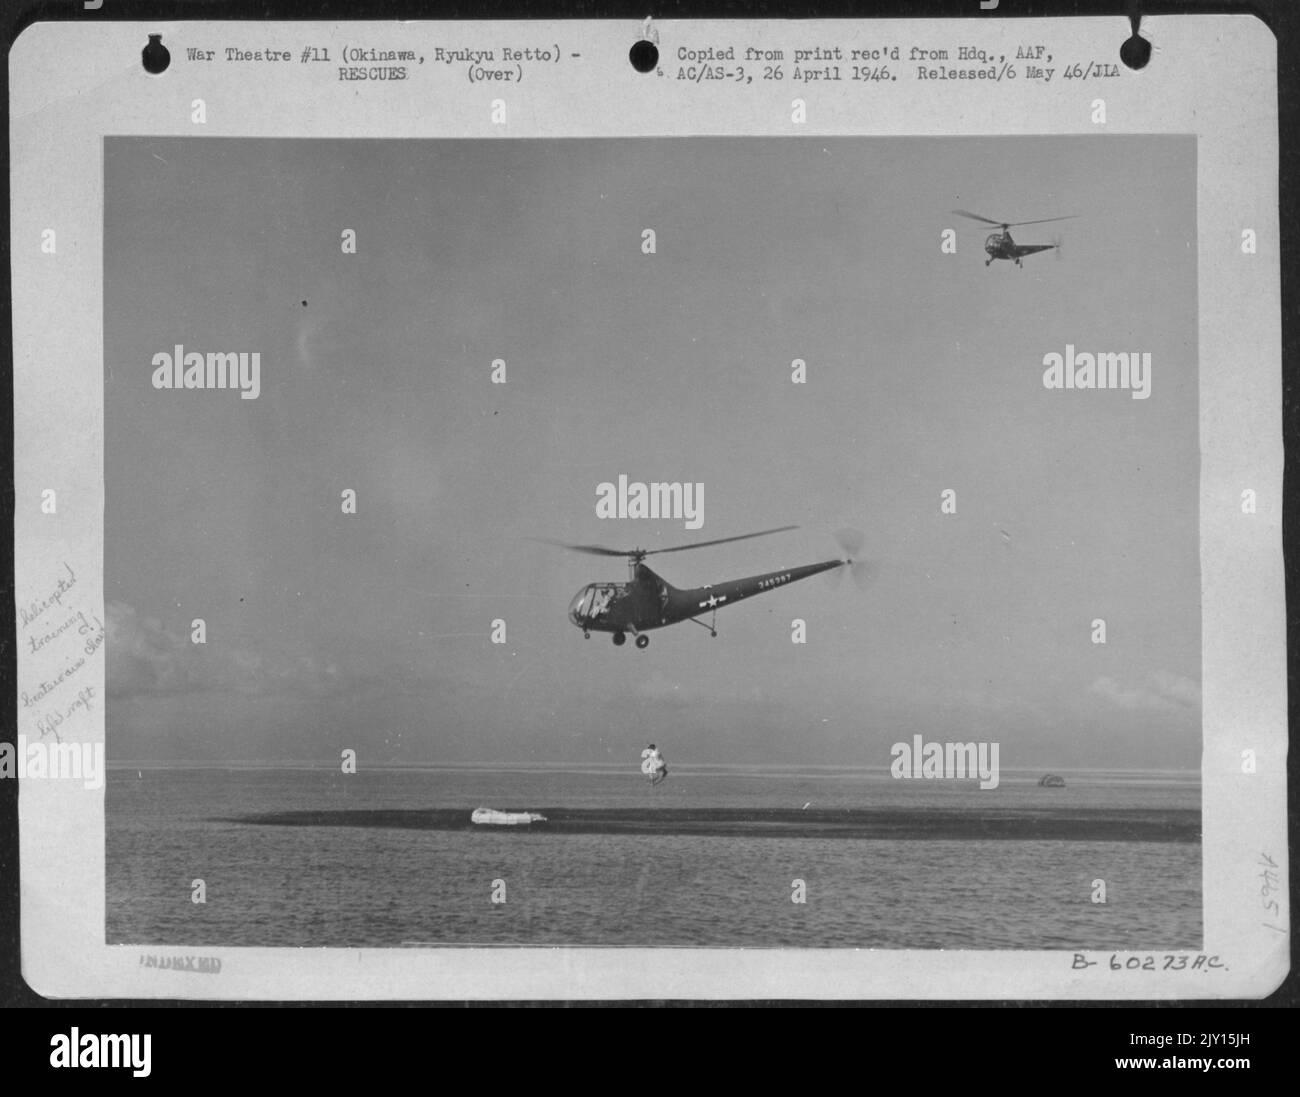 8th démonstration de sauvetage de la Force aérienne à Okinawa, Ryukyu Retto, 27 janvier 1946. Le dernier des 'Survivors' est pris à bord de l'hélicoptère R-6. Il a fallu moins de dix minutes pour « sauver » quatre survivants à environ 1/2 km de Shore. (Totalement non répété). Banque D'Images